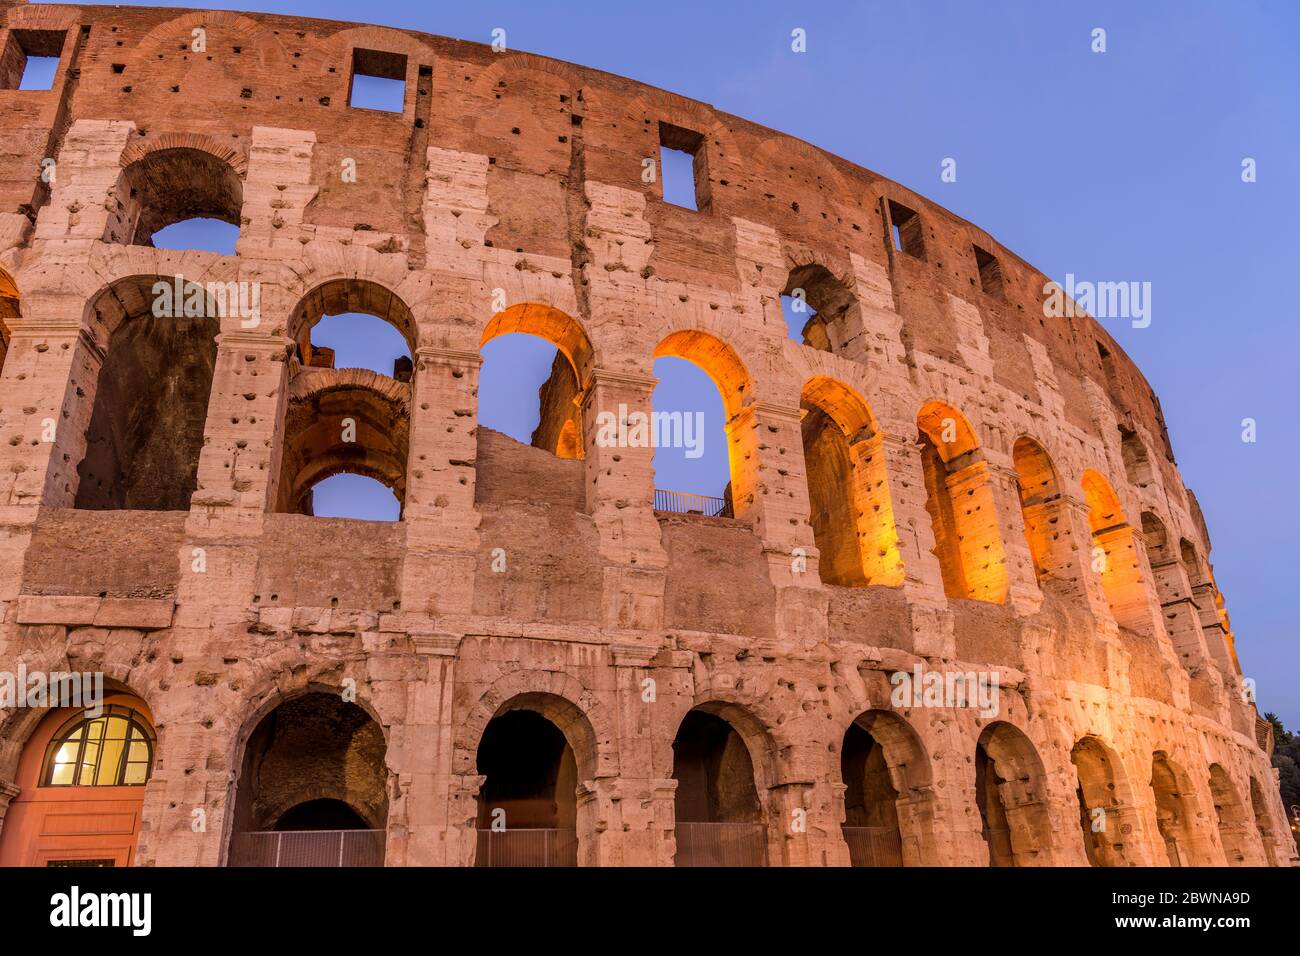 Mur extérieur du Colisée - vue rapprochée à angle bas de la partie supérieure du mur sud-ouest du Colisée, contre un ciel bleu clair. Rome, Italie. Banque D'Images